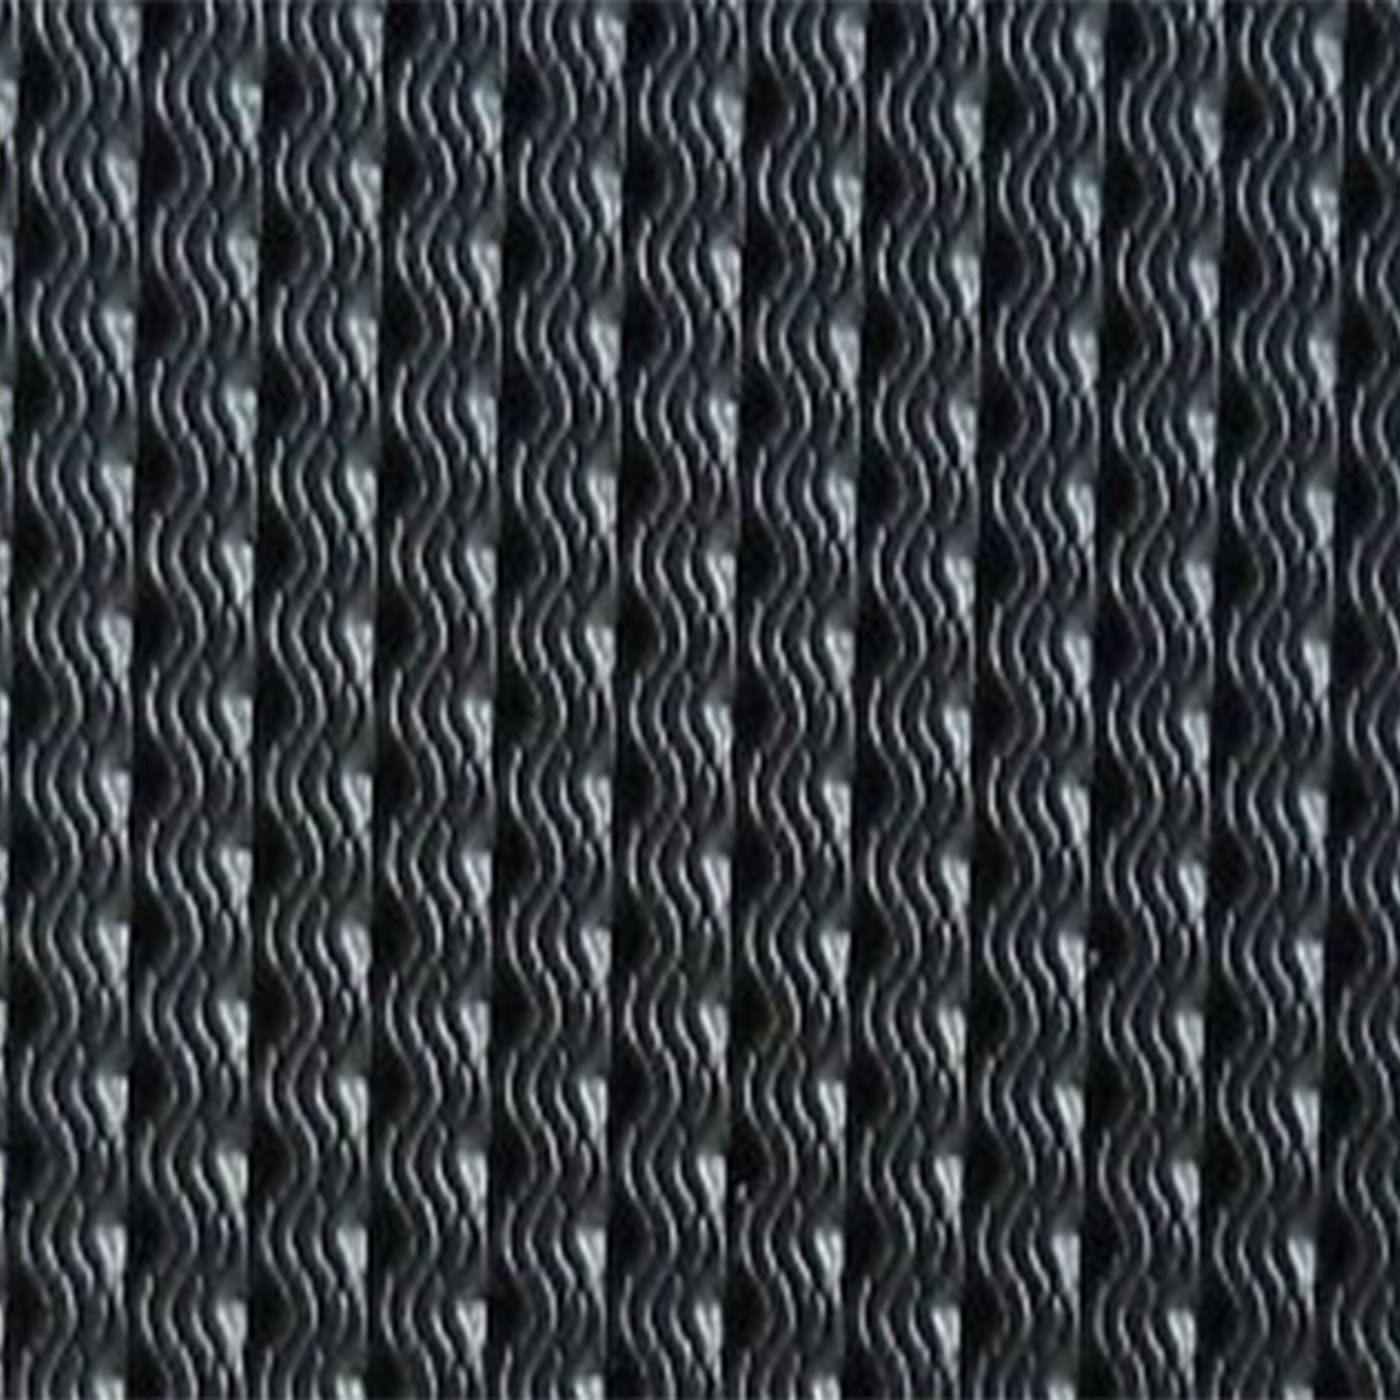 HOLDEN HK MONARO SEAT DOOR TRIM BLACK VINYL MATERIAL - PER METRE  - 1.3M WIDE